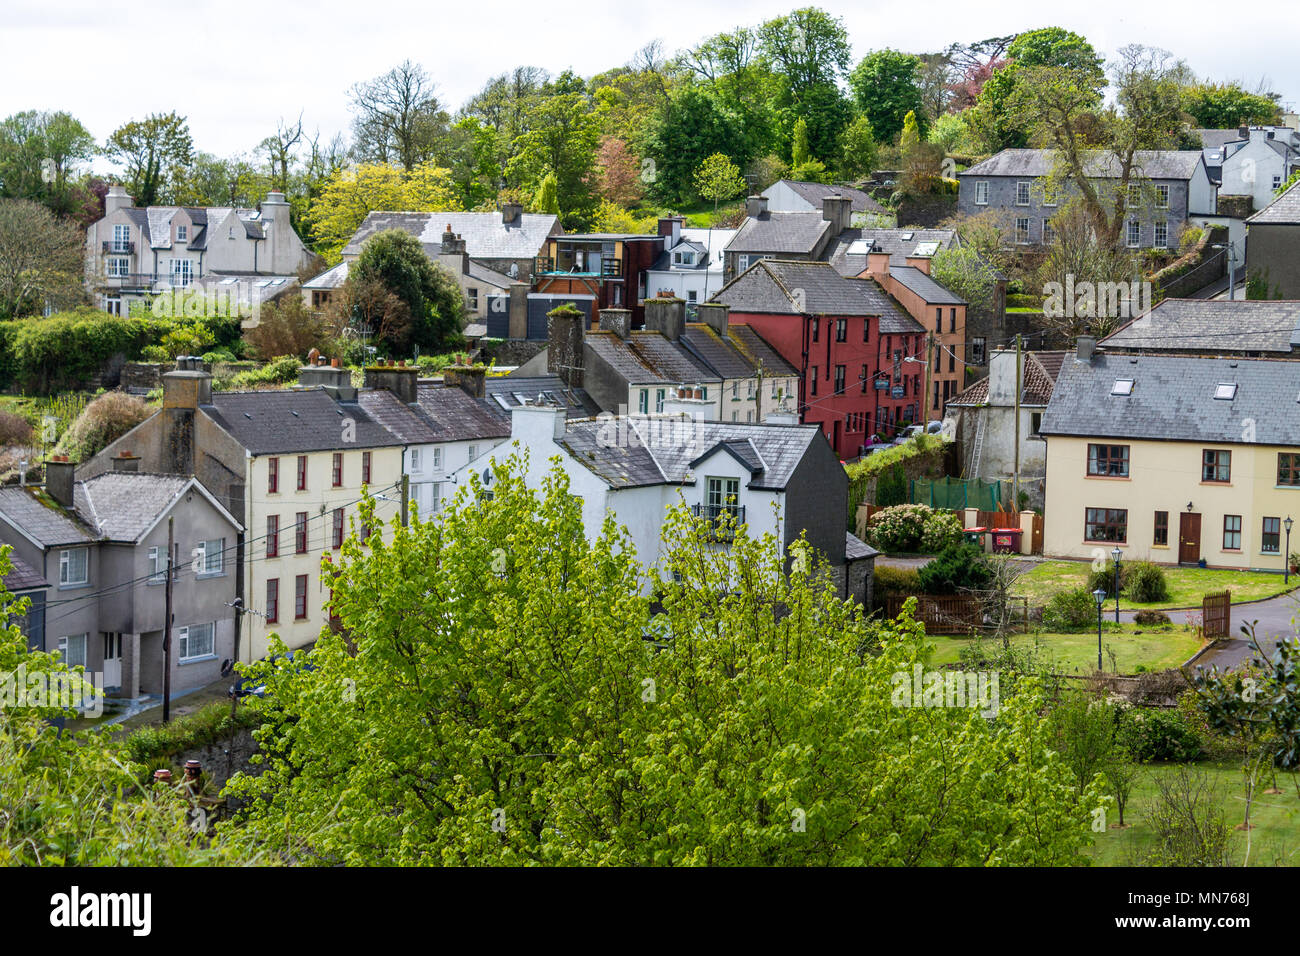 Bunt bemalte Häuser in einem ländlichen Dorf in Irland castletownshend, County Cork, Irland. Stockfoto